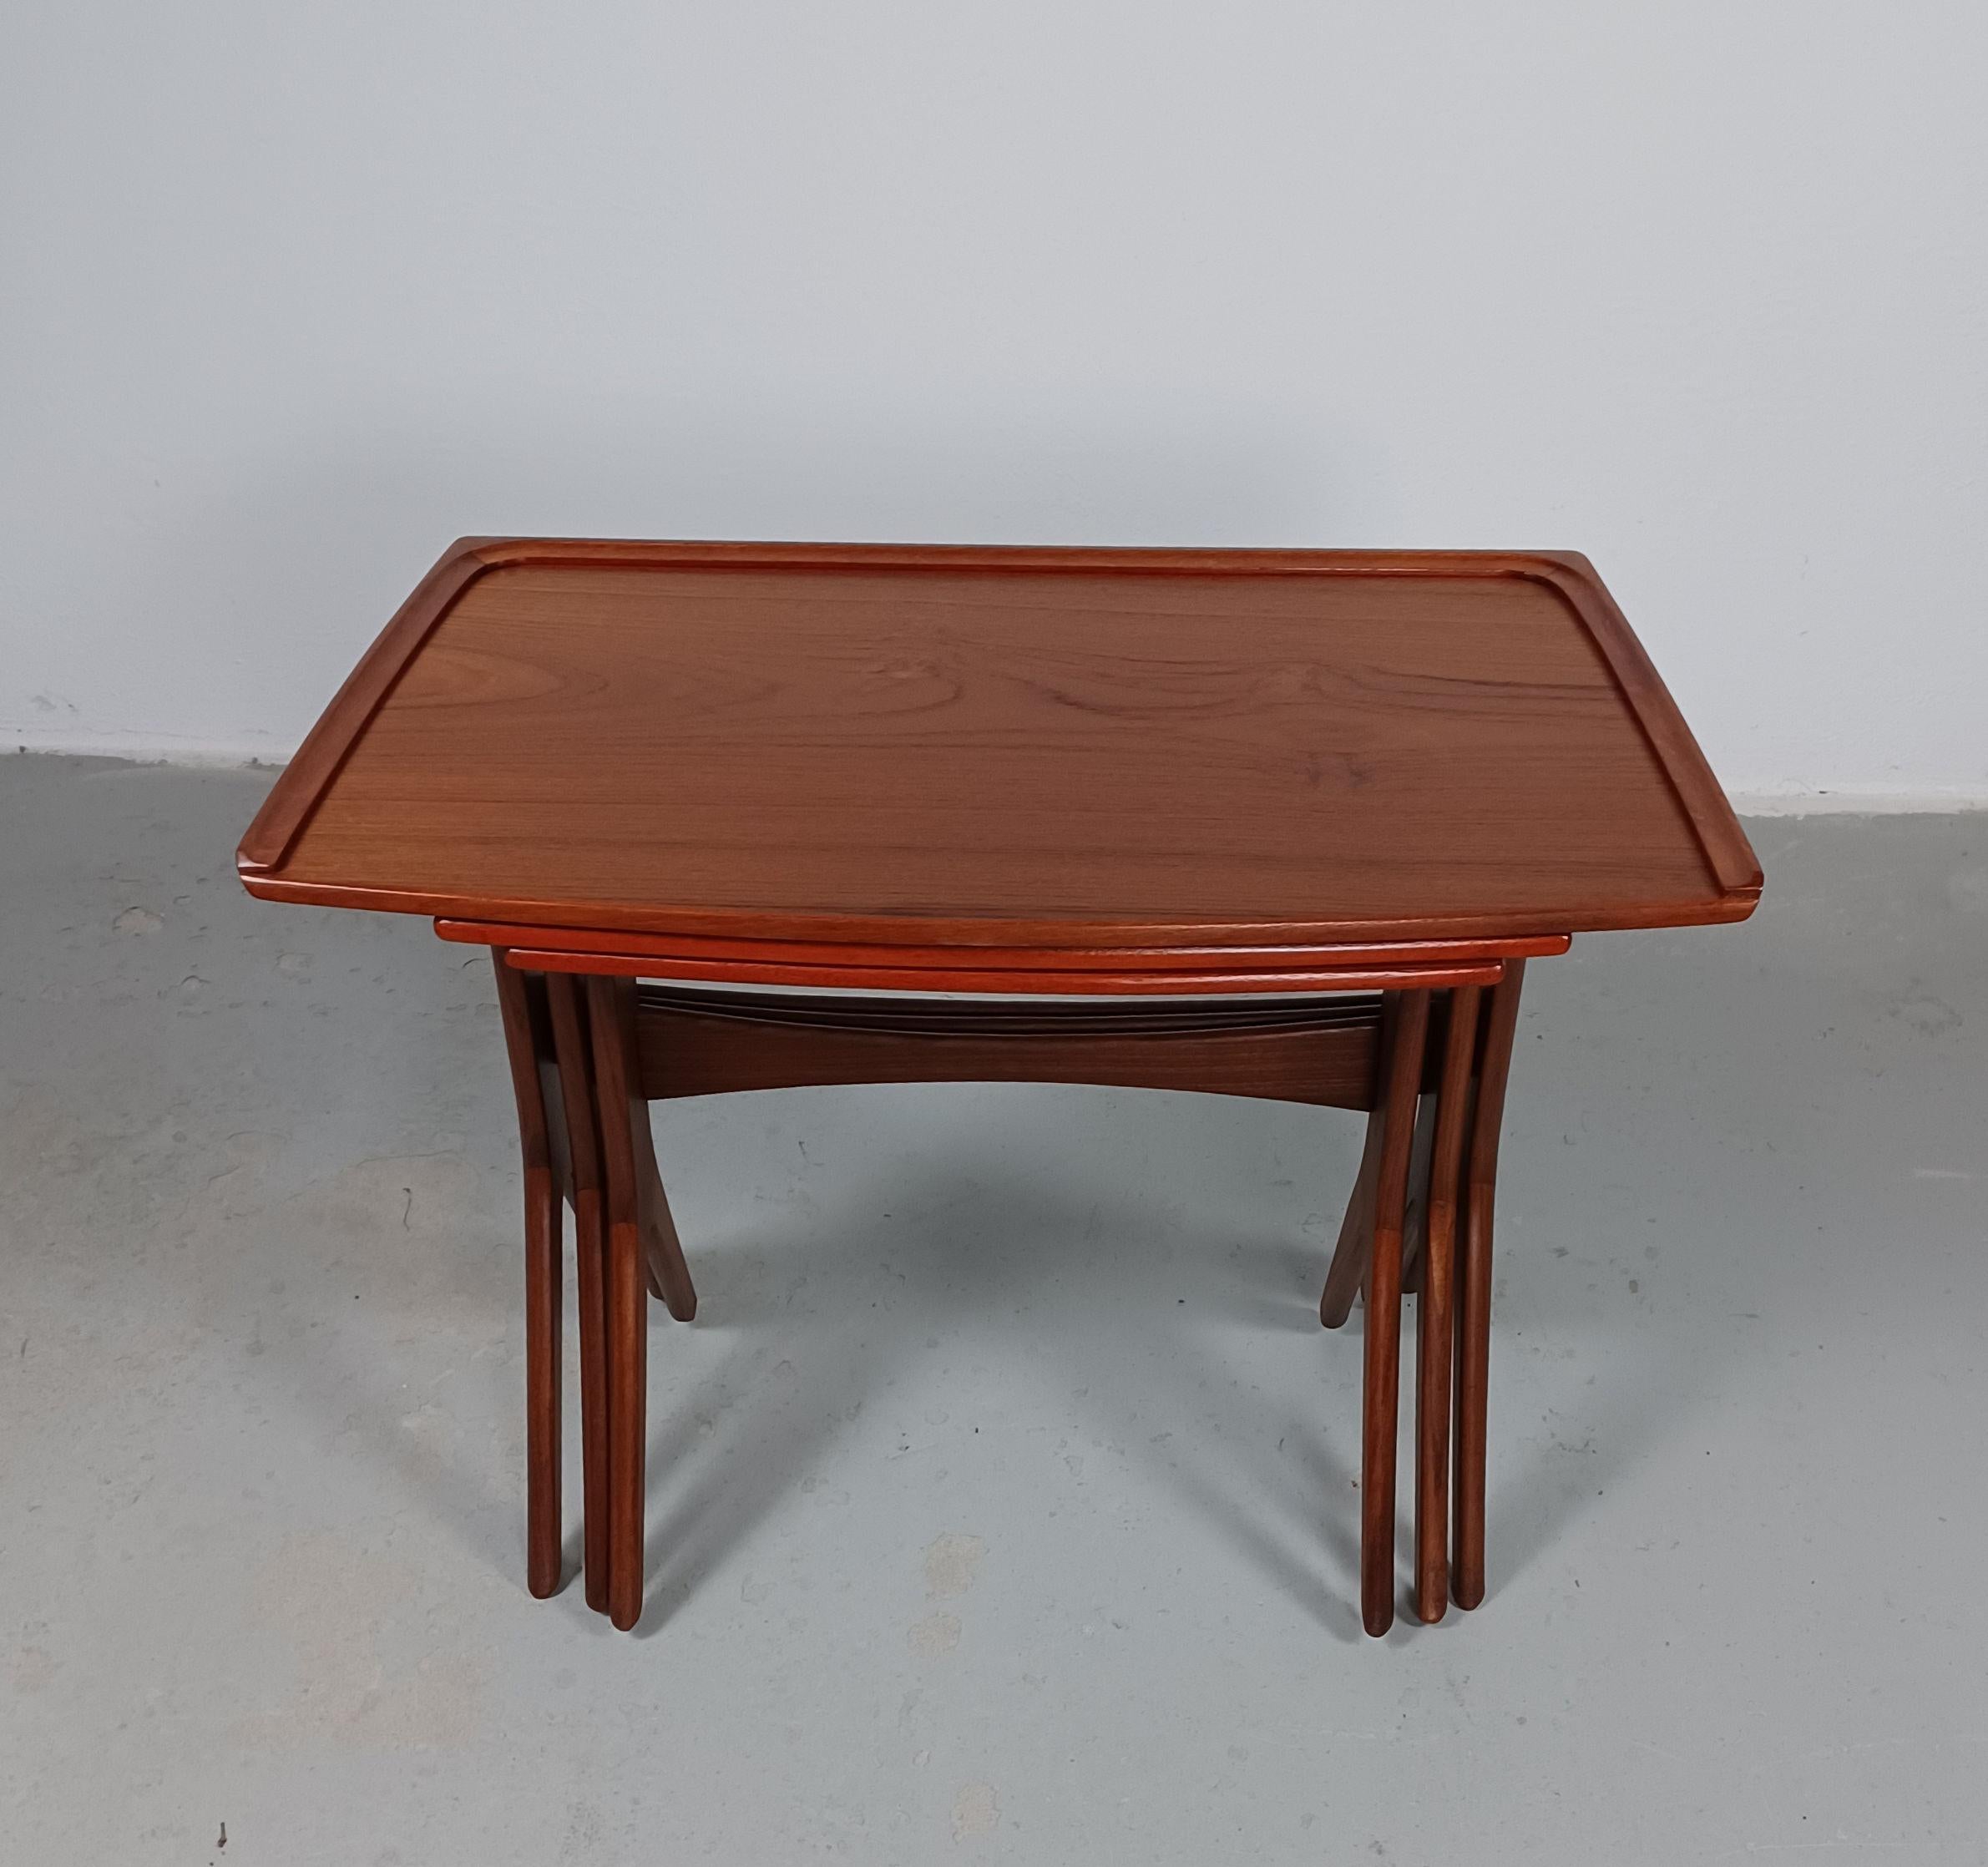 Ensemble de tables gigognes danoises en teck, restaurées par Johannes Andersen dans les années 1960, par CFC Silkeborg.

Ces tables gigognes simples et minimalistes, mais bien formées, pratiques et peu encombrantes, ont été entièrement restaurées et